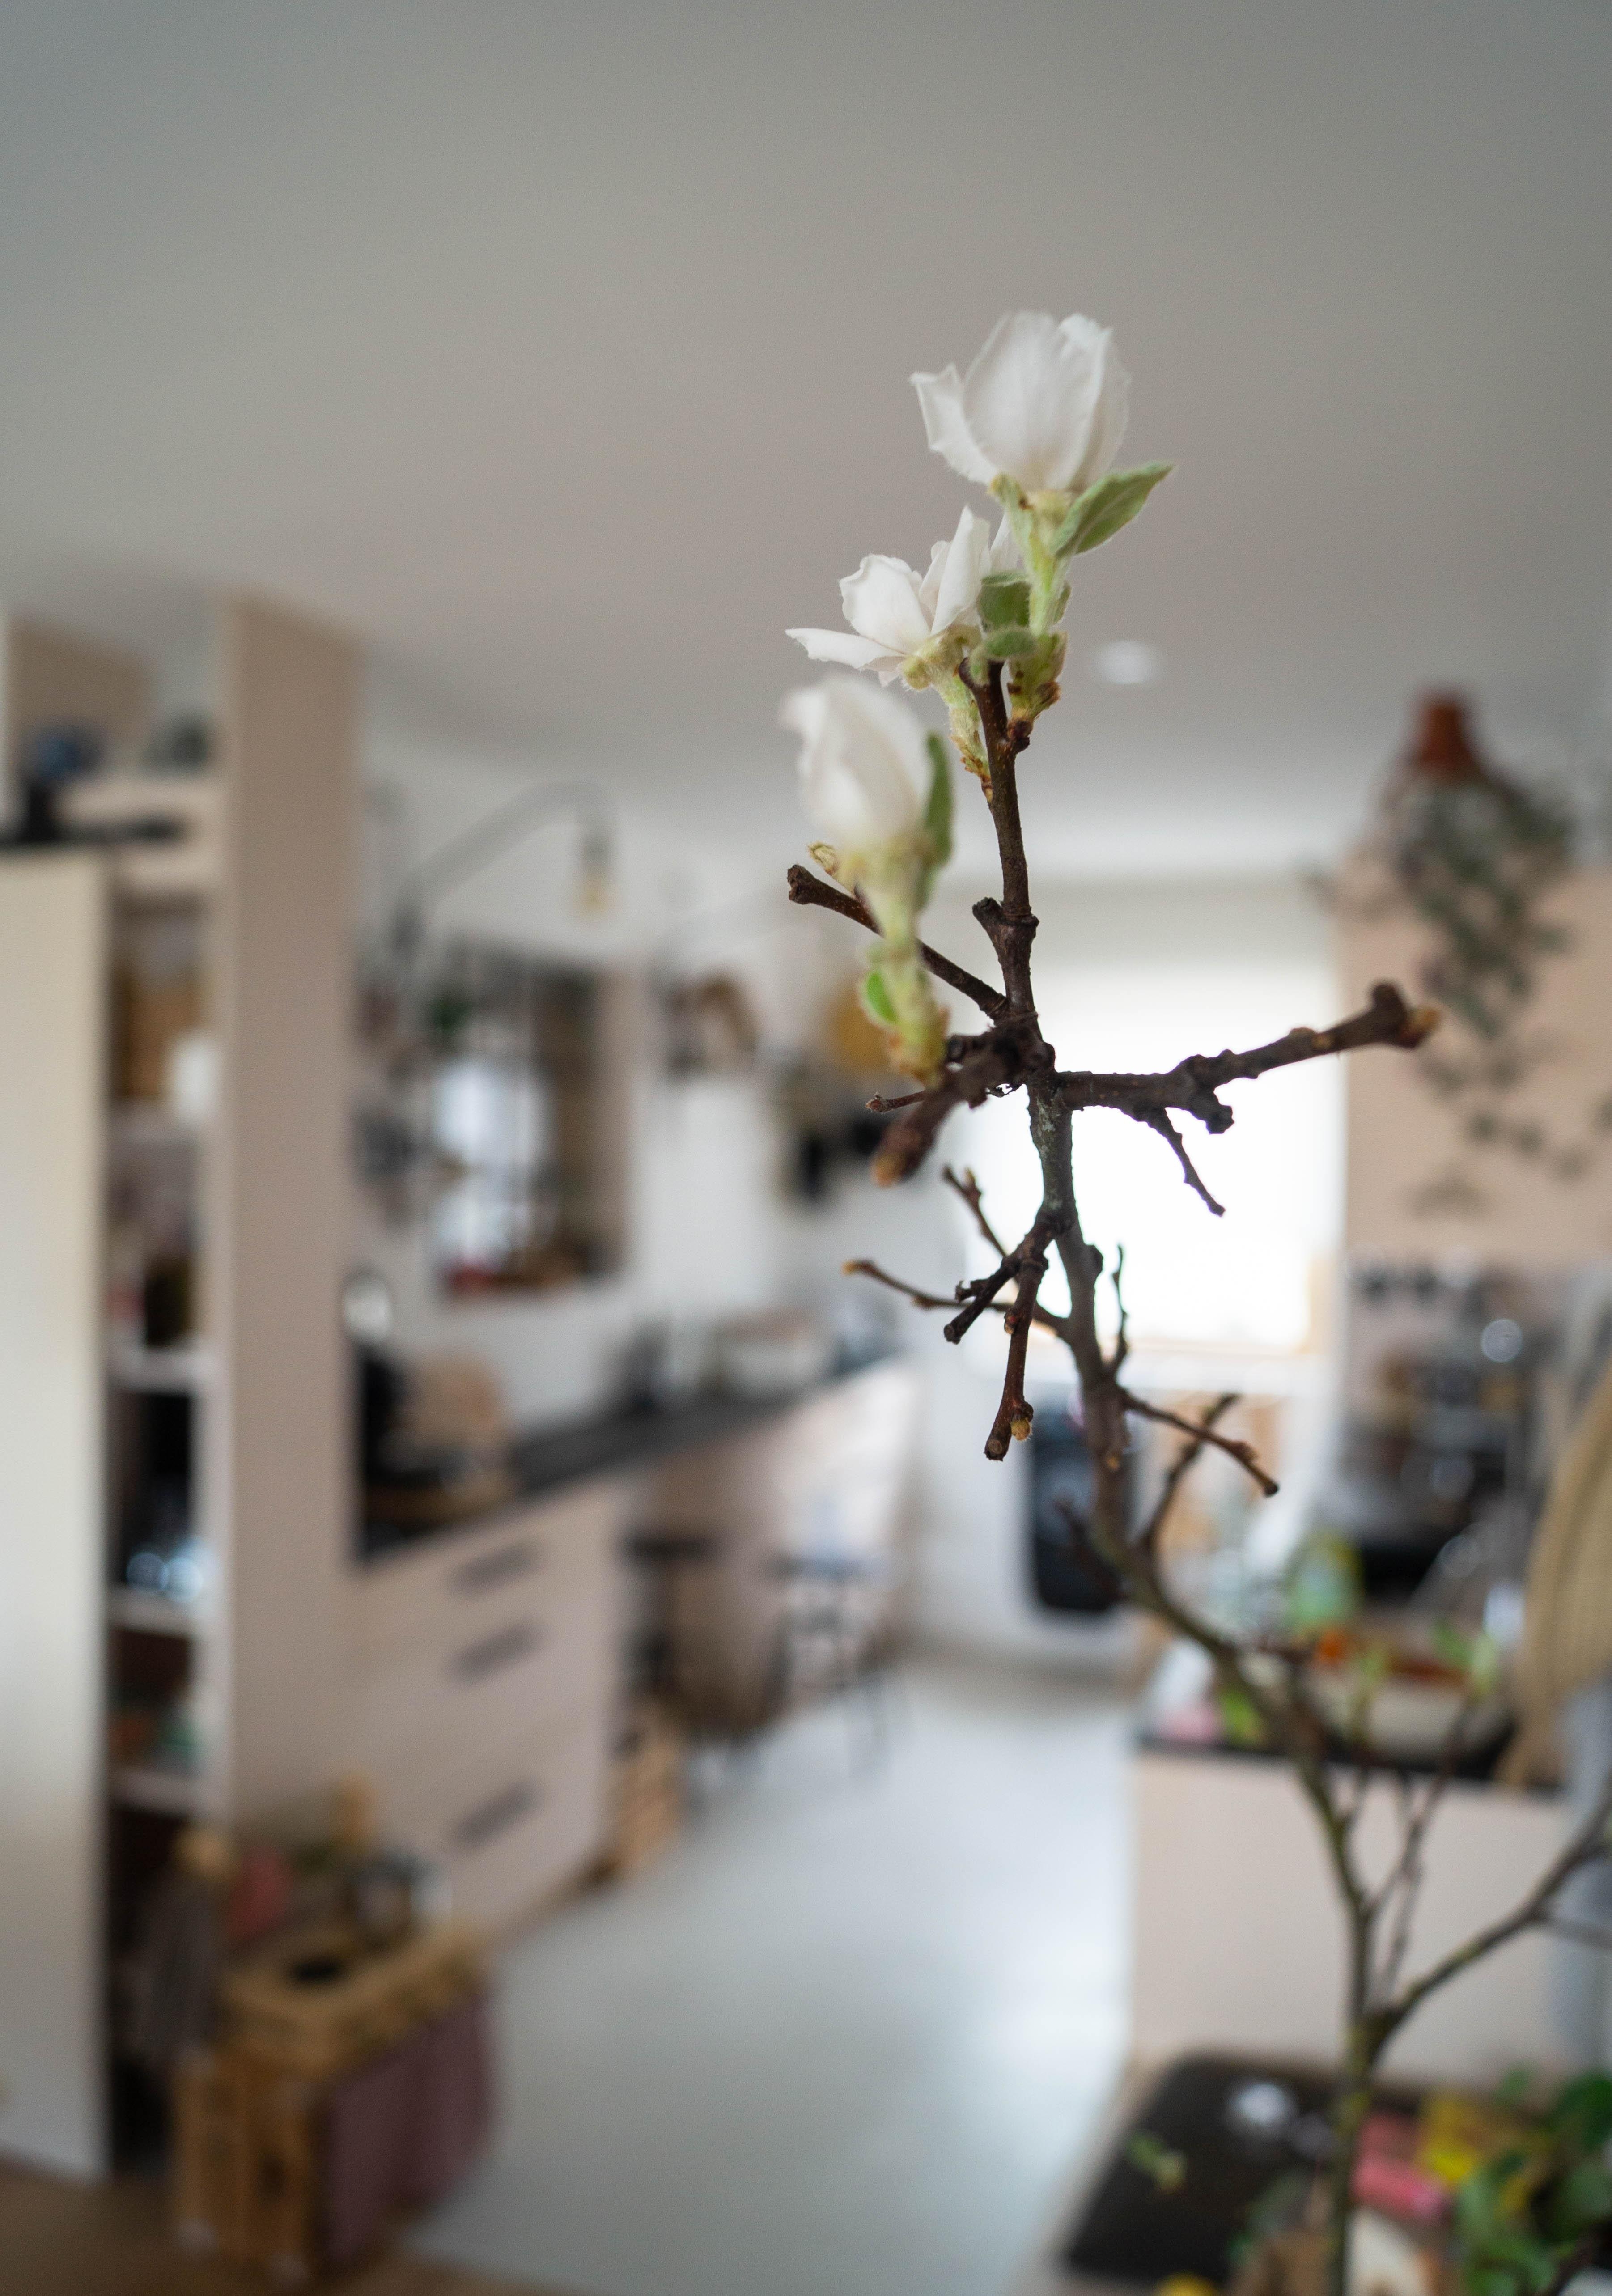 Kitchenvibes...
#küche #kitchen #myhome #interior #inspiration #flowerlover #spring